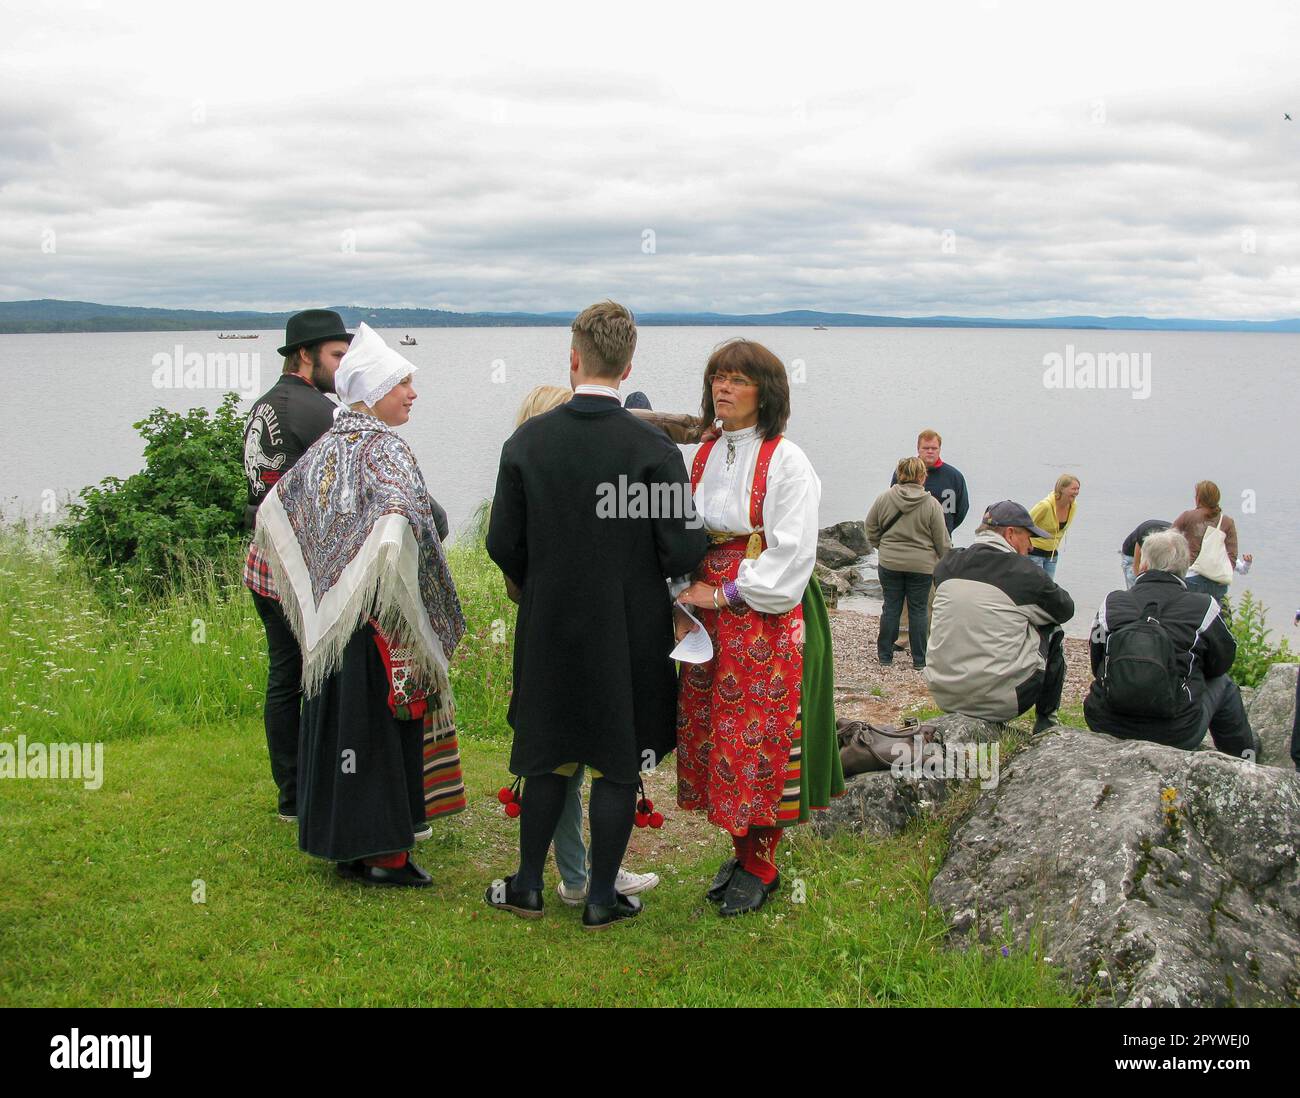 Mittsommer in Dalarna Menschen in Kostümen warten auf das Kirchenboot auf dem Siljansee, das zum Gottesdienst ankommt Stockfoto